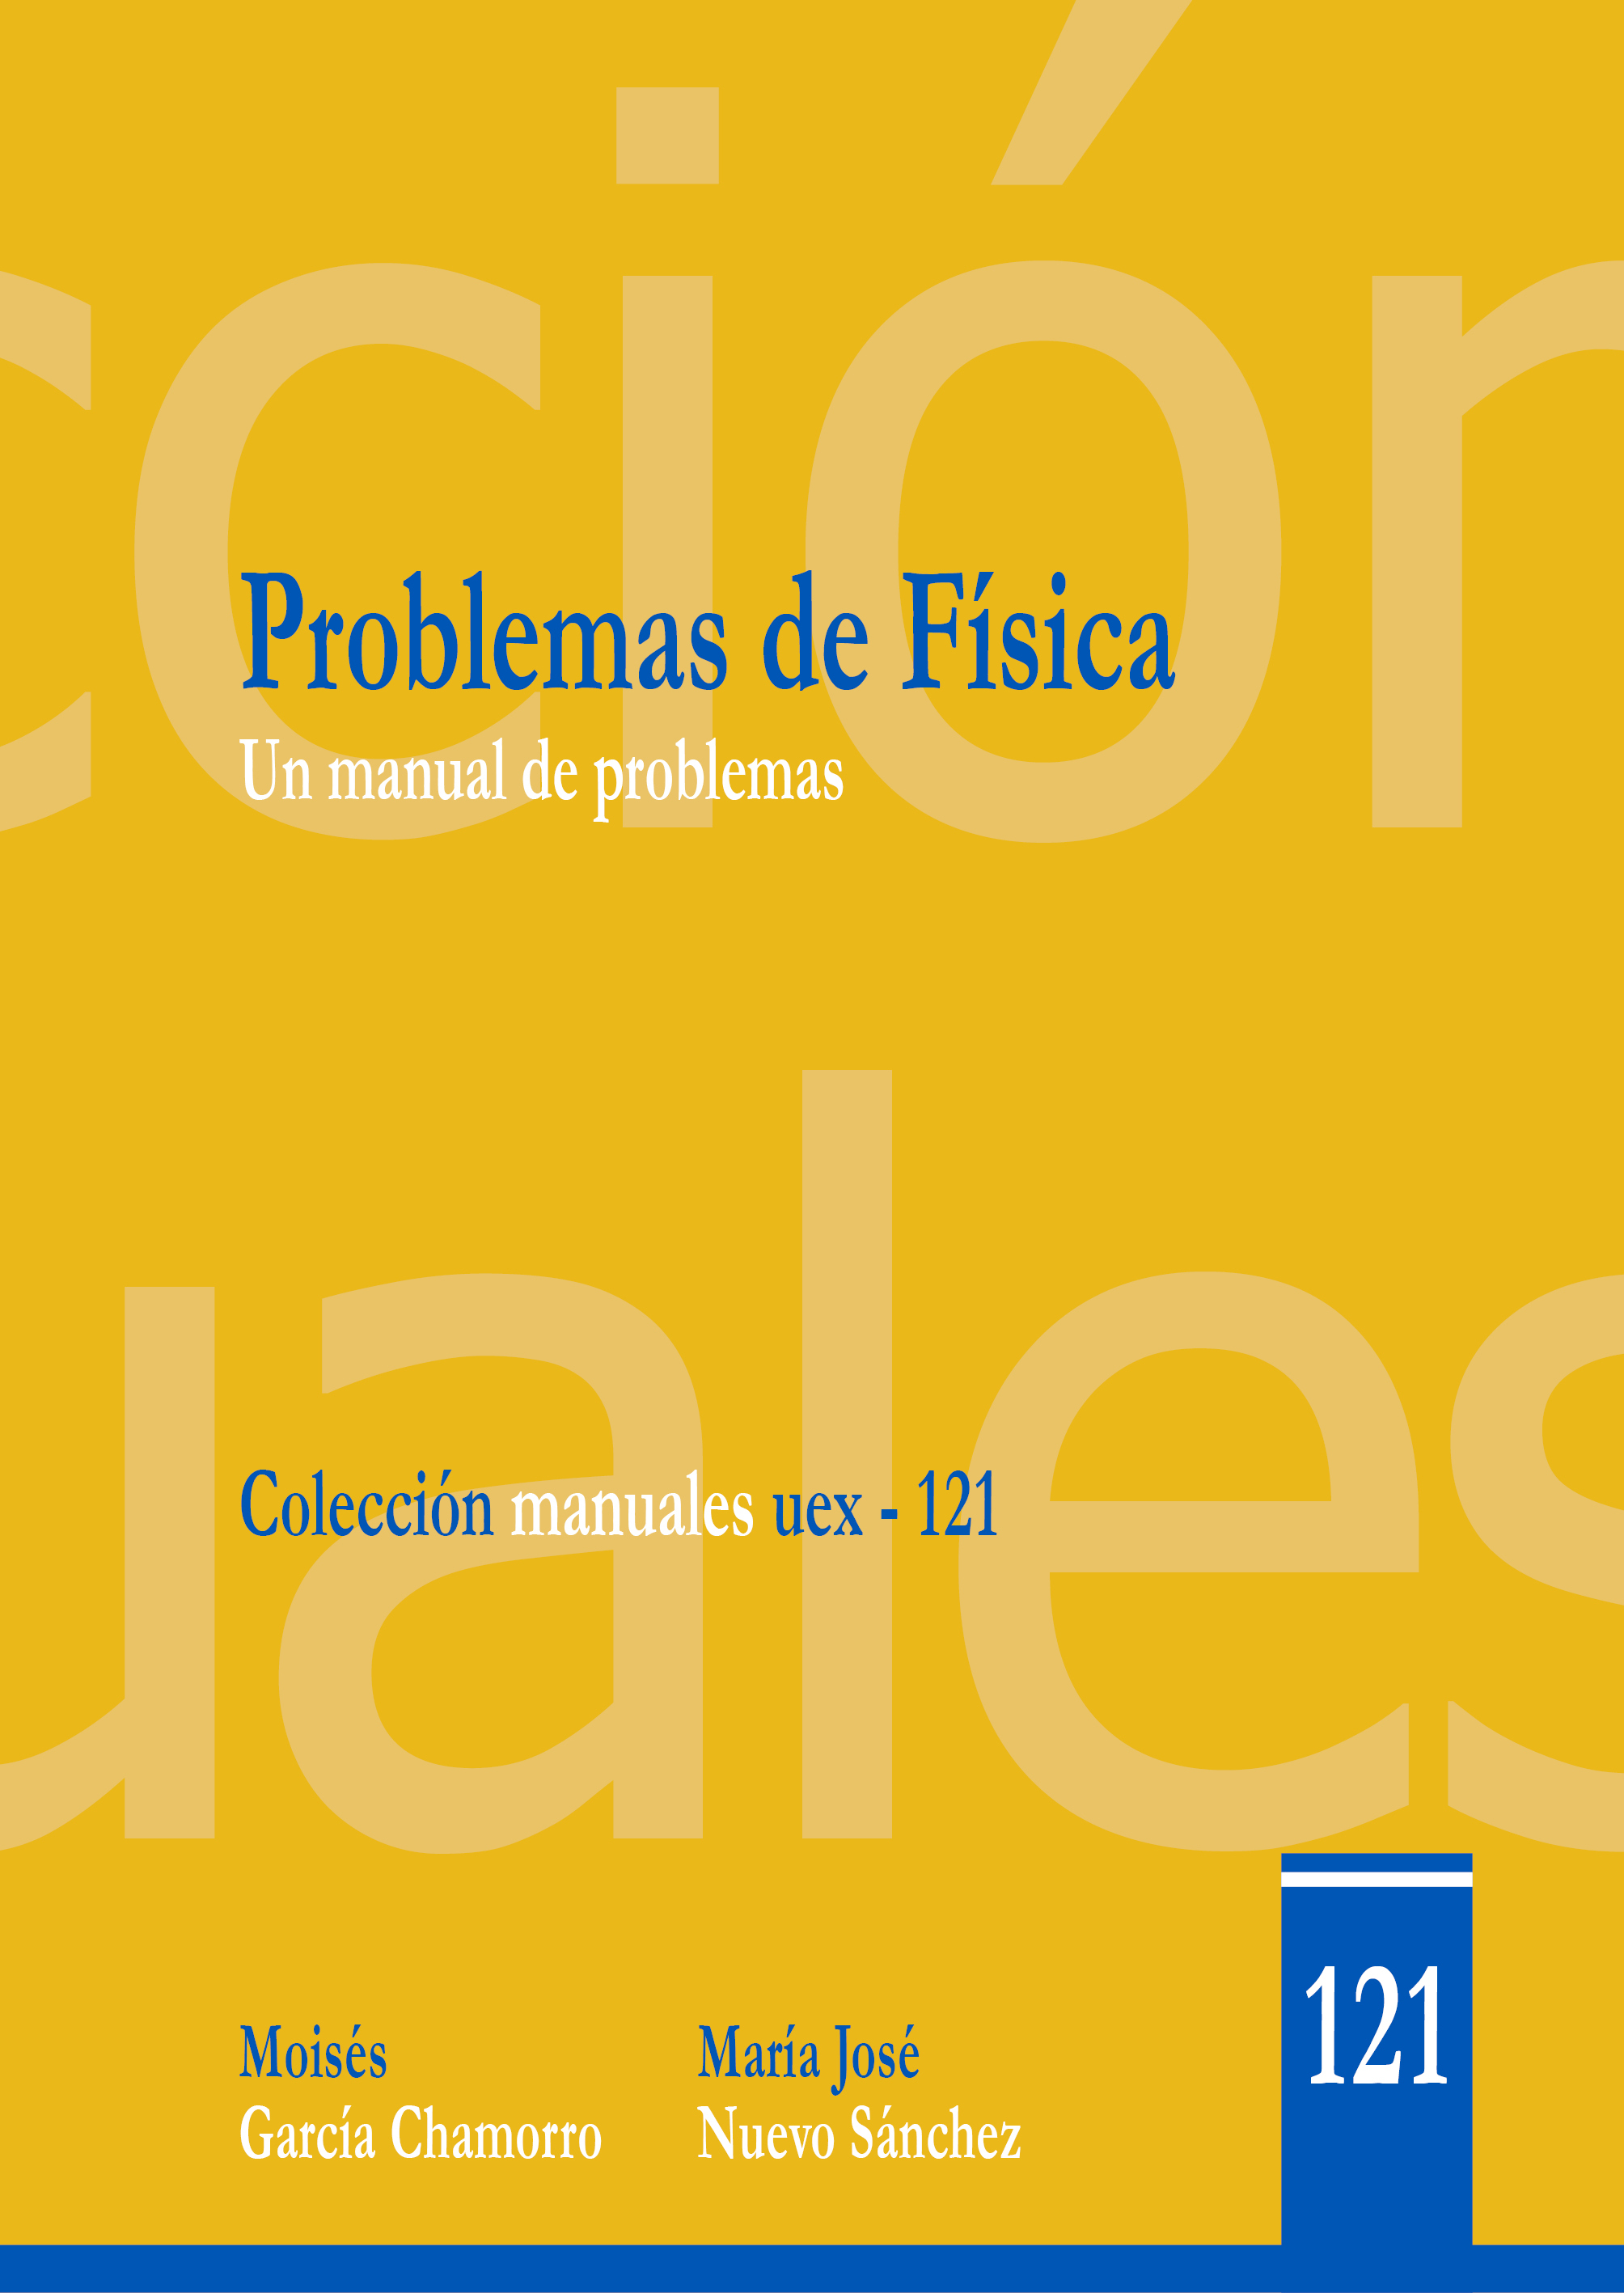 Imagen de portada del libro Problemas de Física